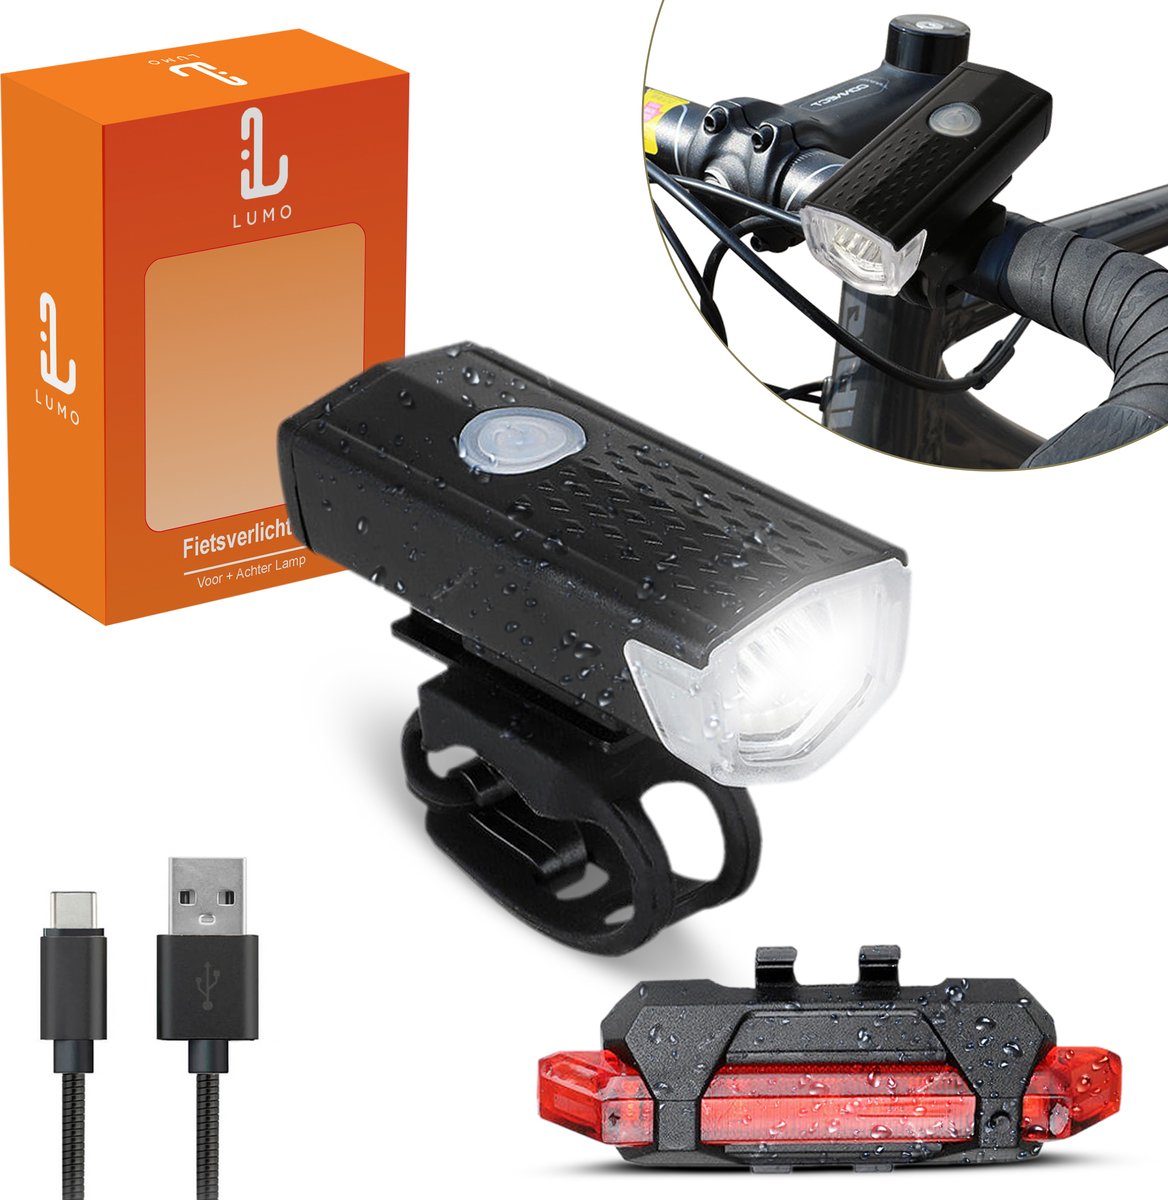 LUMO Waterbestendige Fietsverlichting Set Voor & Achterlicht - Fietsverlichting - Fietslamp - Fietslampjes - Fietsverlichting USB Oplaadbaar - Zwart